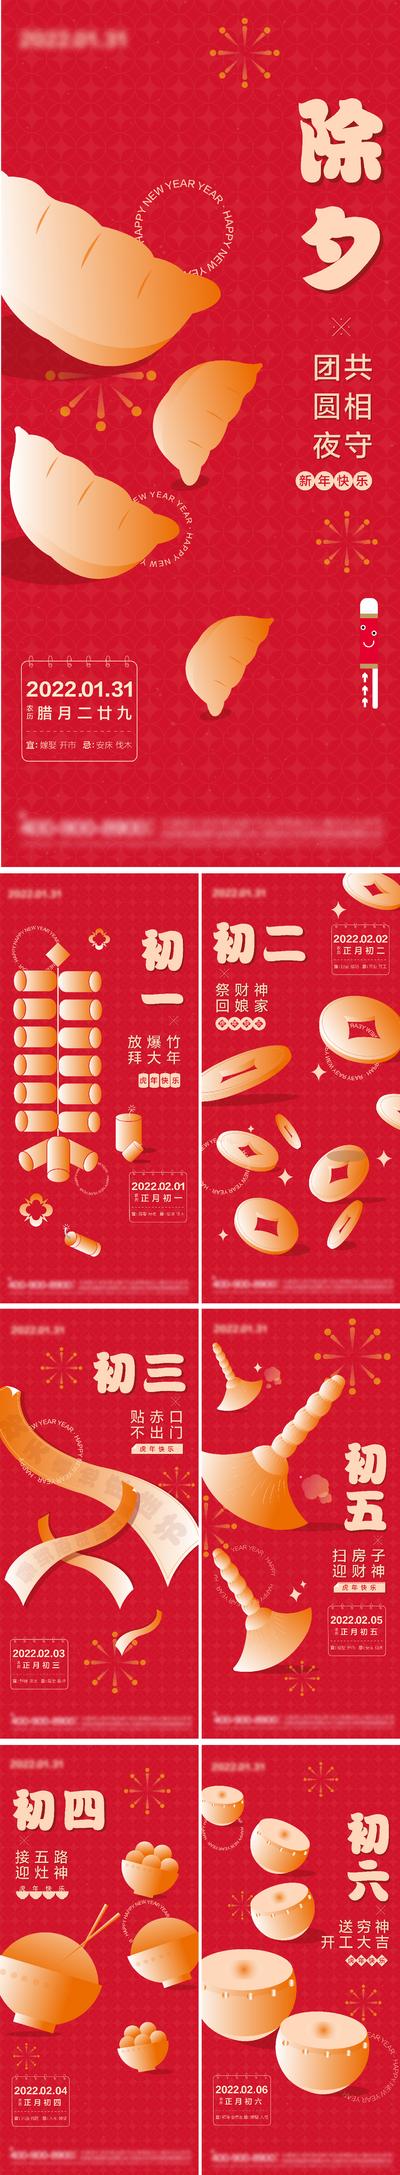 南门网 海报 中国传统节日 春节 新年 除夕 初一 初六 红色 饺子 爆竹 烟花 简约 系列